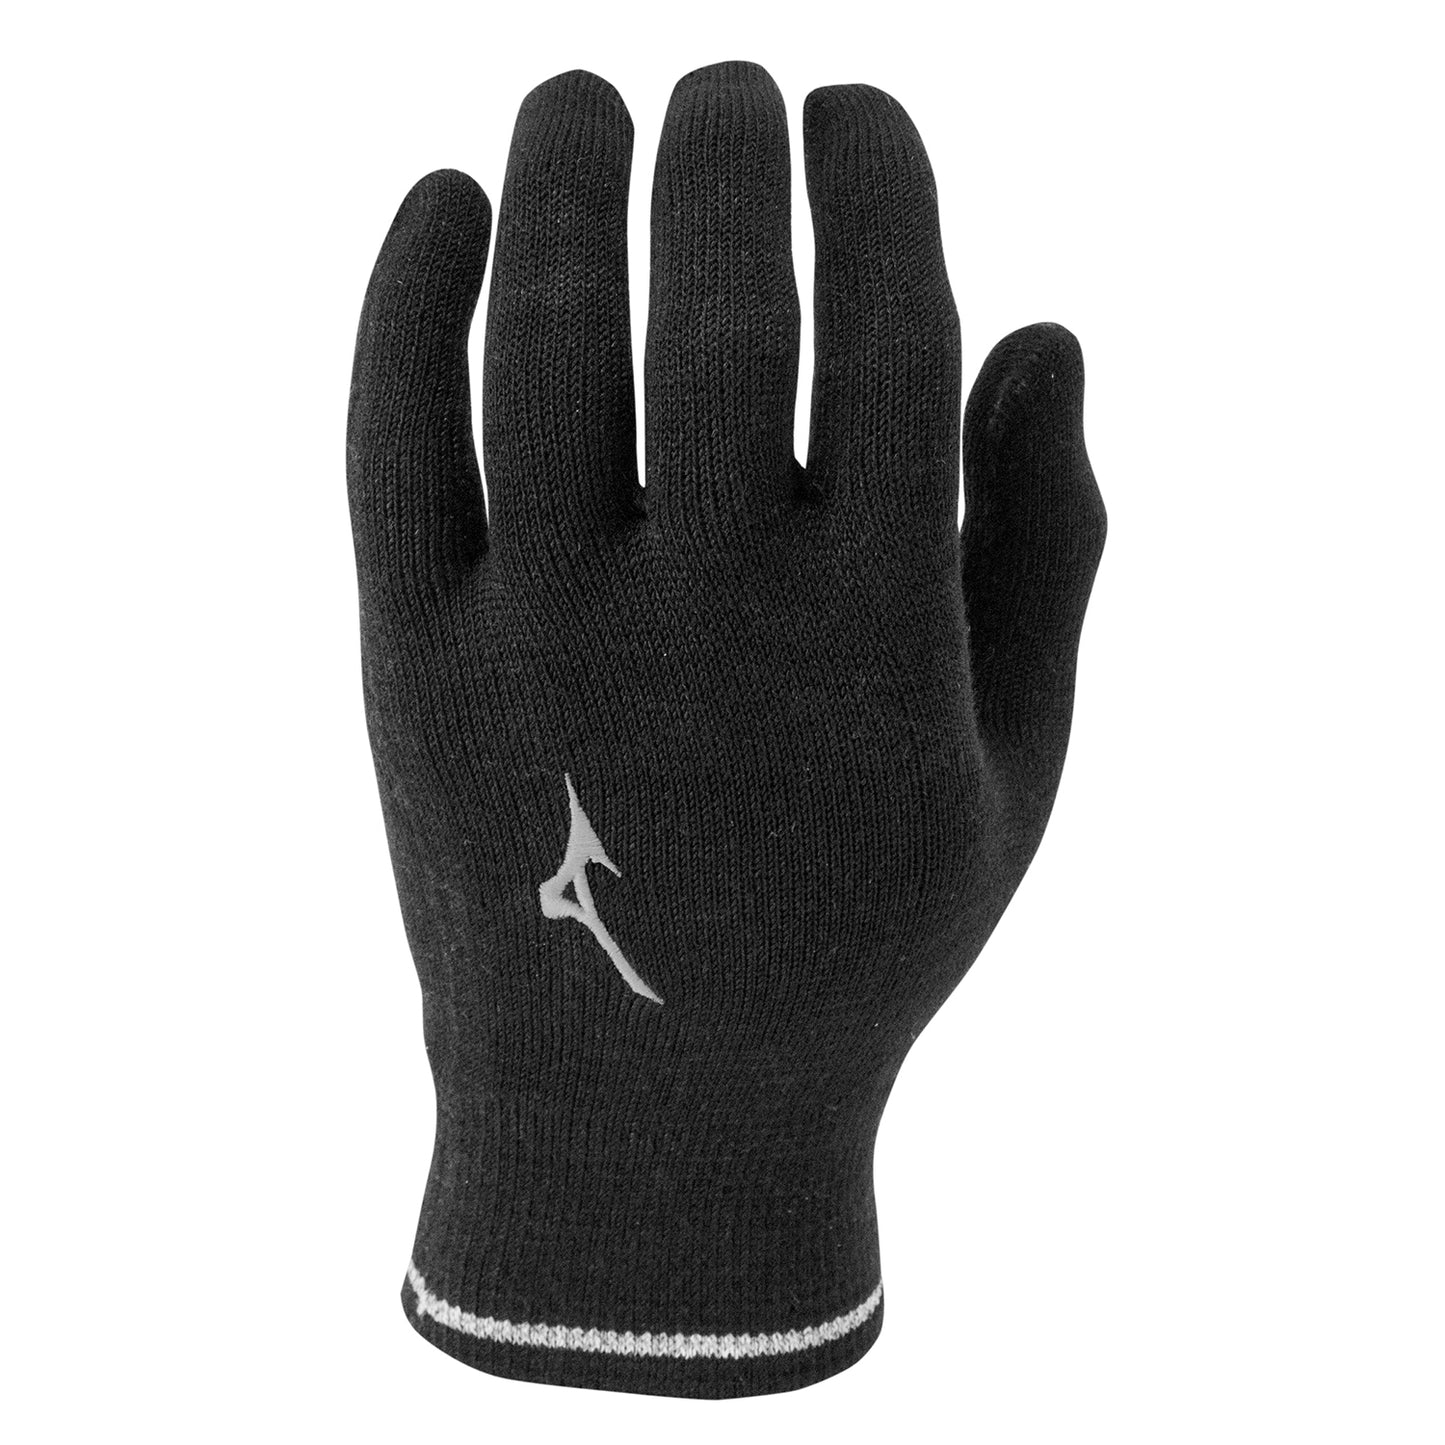 Breath Thermo Knit Glove - Black